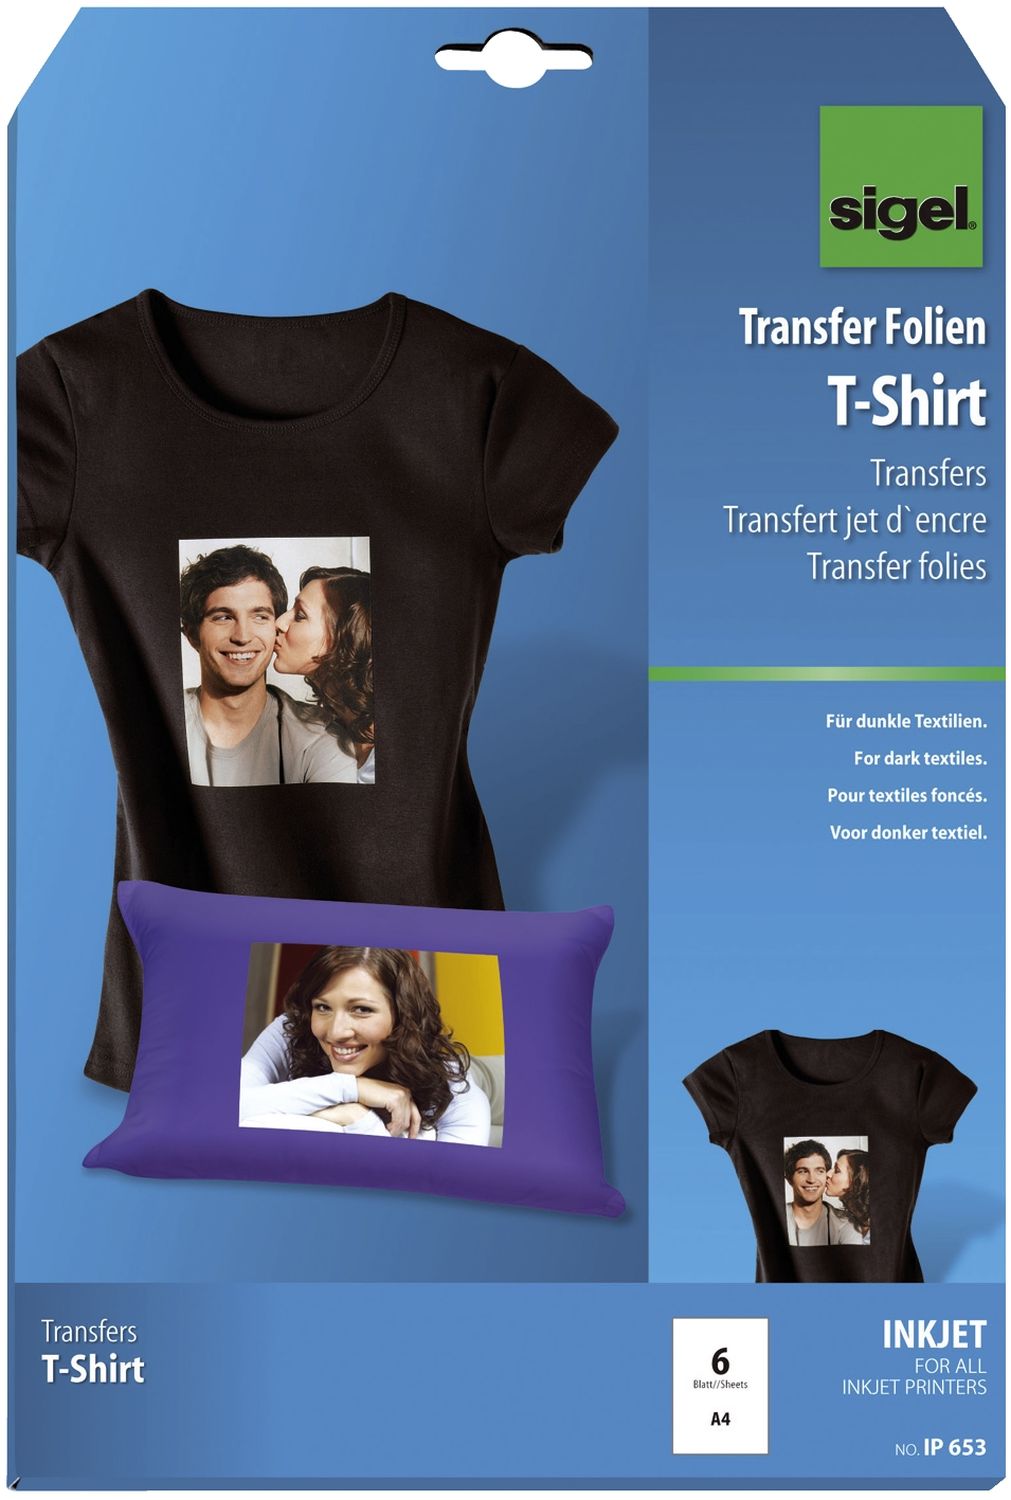 InkJet Transfer Folien für T-Shirts, für dunkle Textilien, inkl. Bügelpapier, 6 Folien